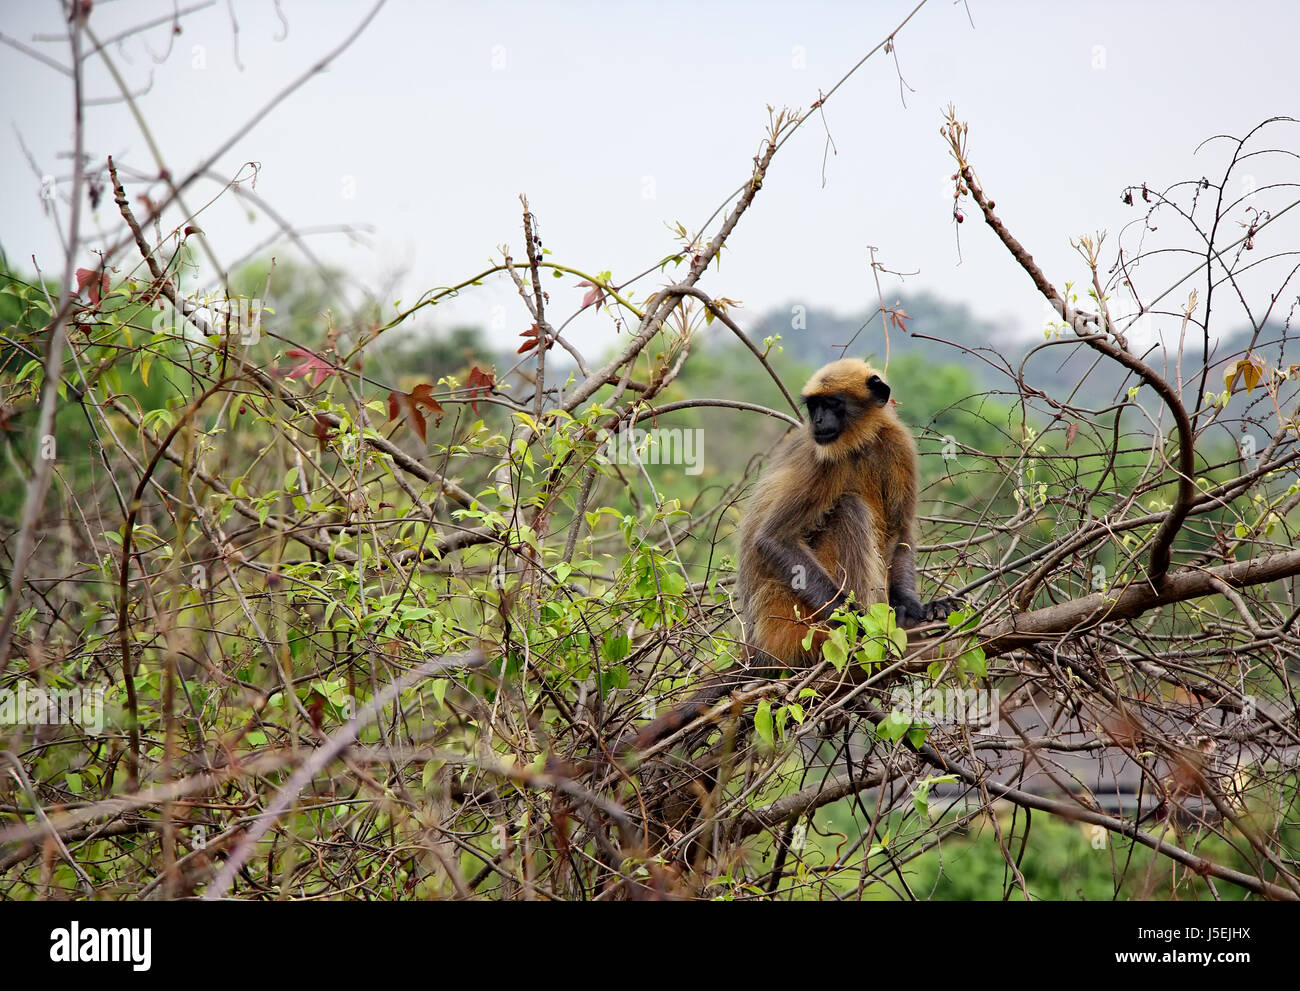 Indische Languren graue Affe sitzt auf einem Baum wilde Beeren im Wald in Goa, Indien. Auch bekannt als Hanuman-Languren und ...dem, Semnopithecus Entellus. Stockfoto